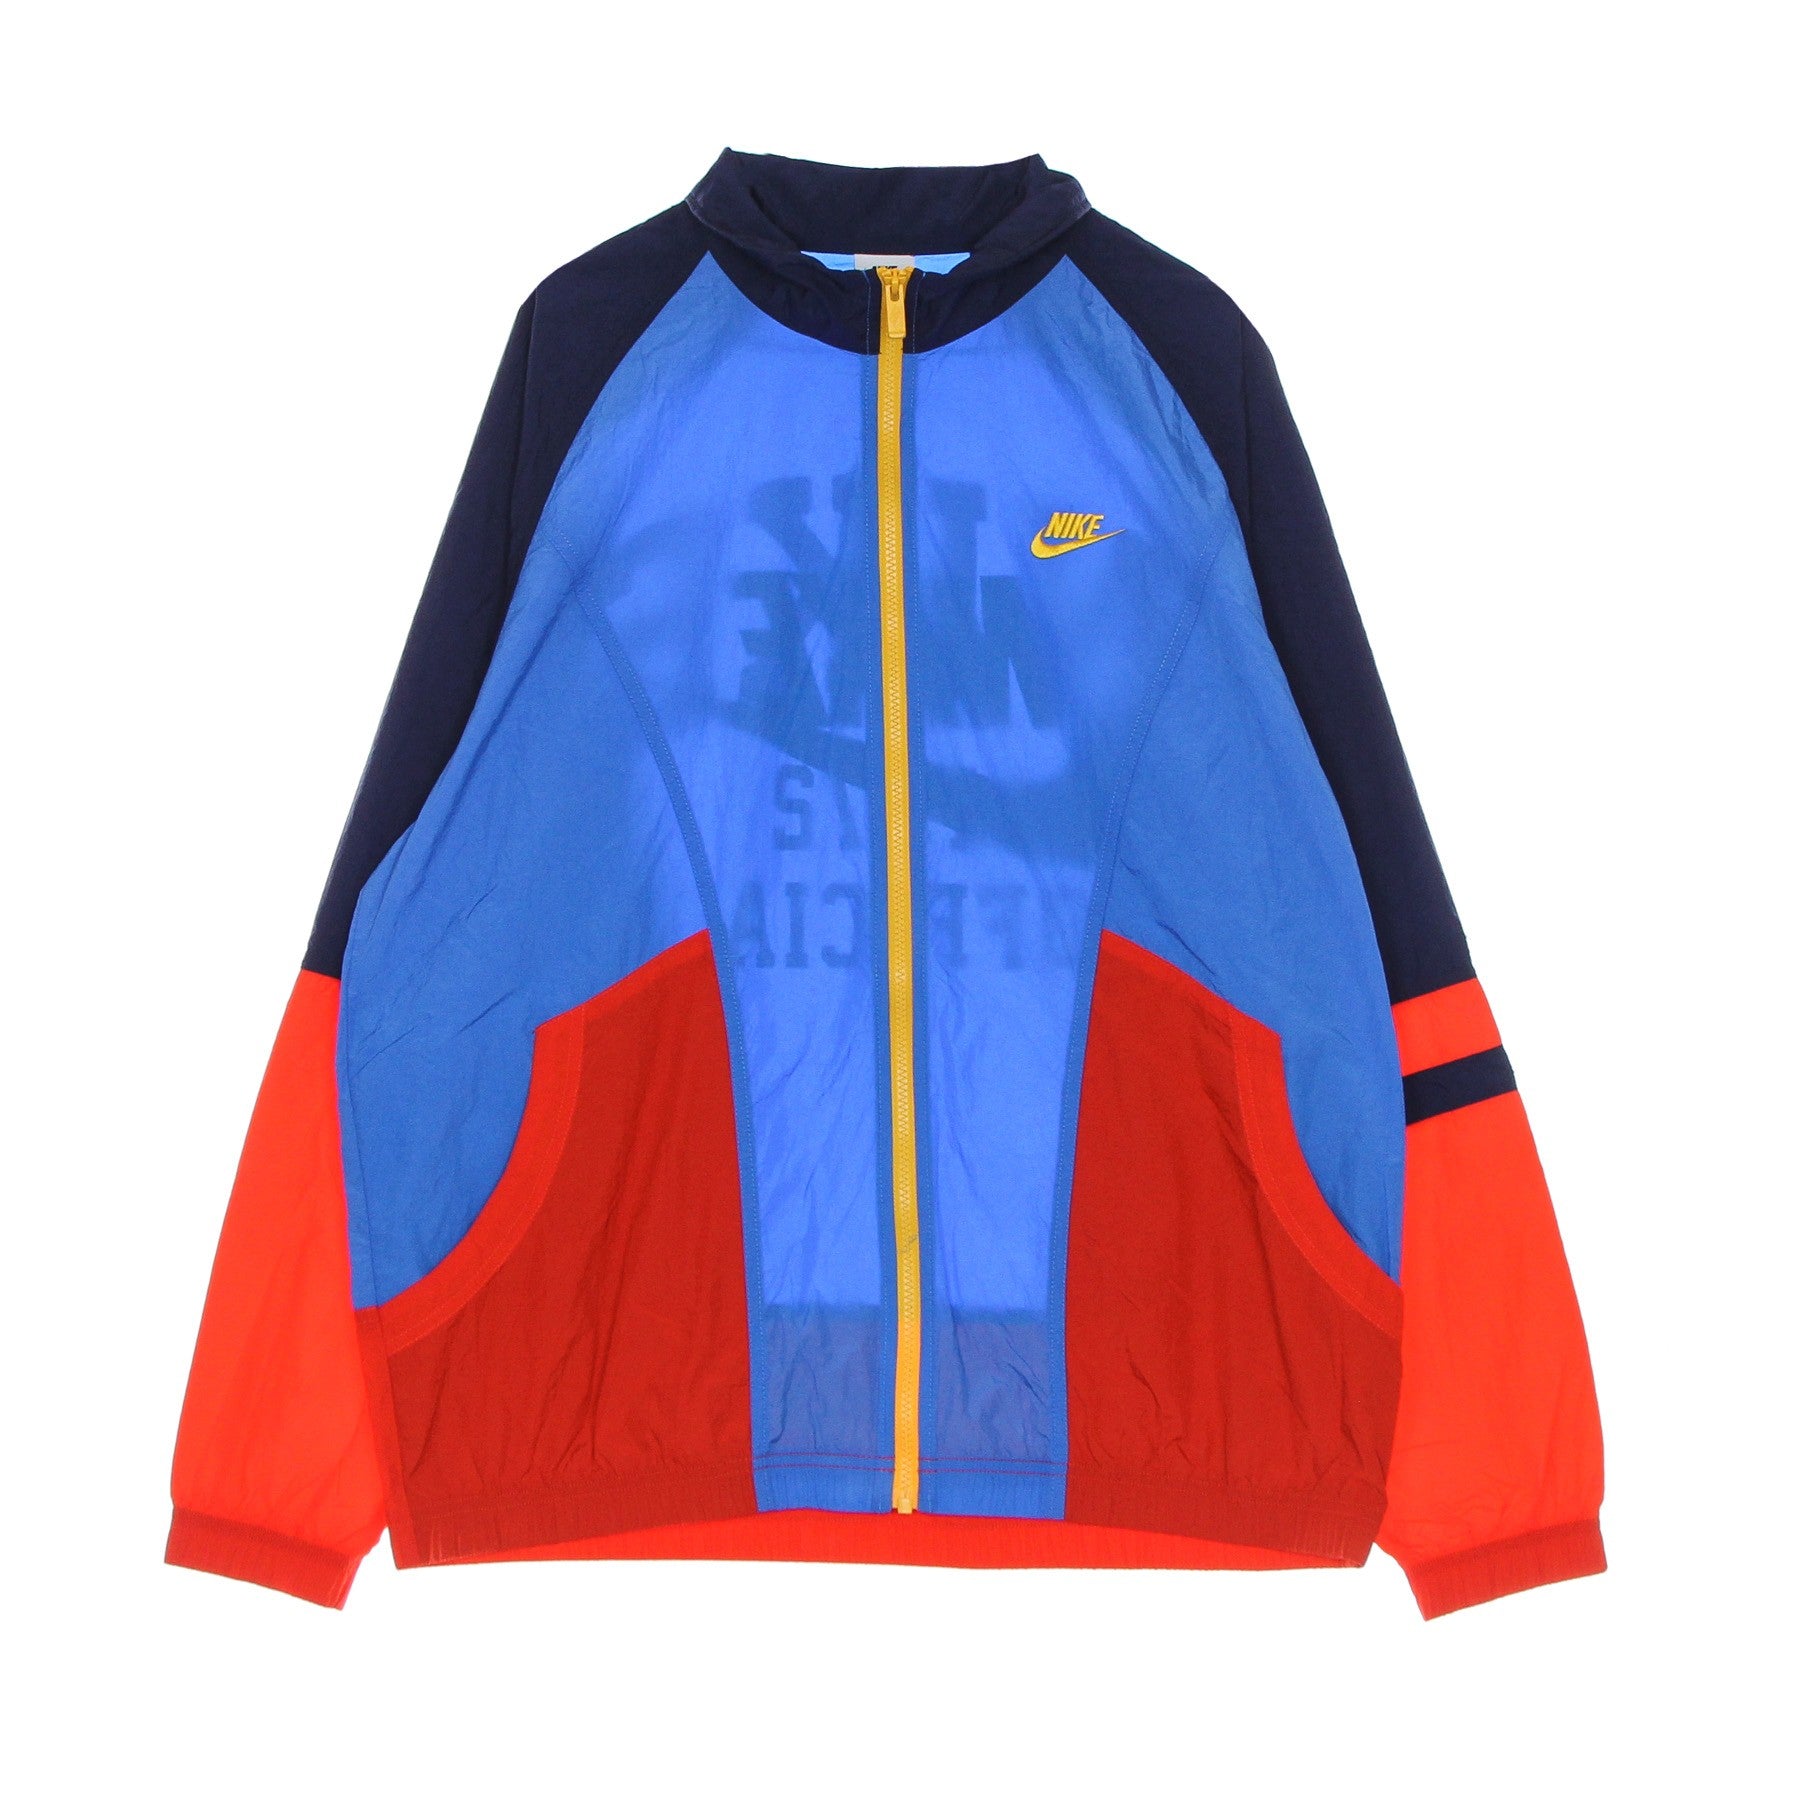 Nike, Giacca Tuta Uomo Trend Unlined Jacket, Lt Photo Blue/university Gold